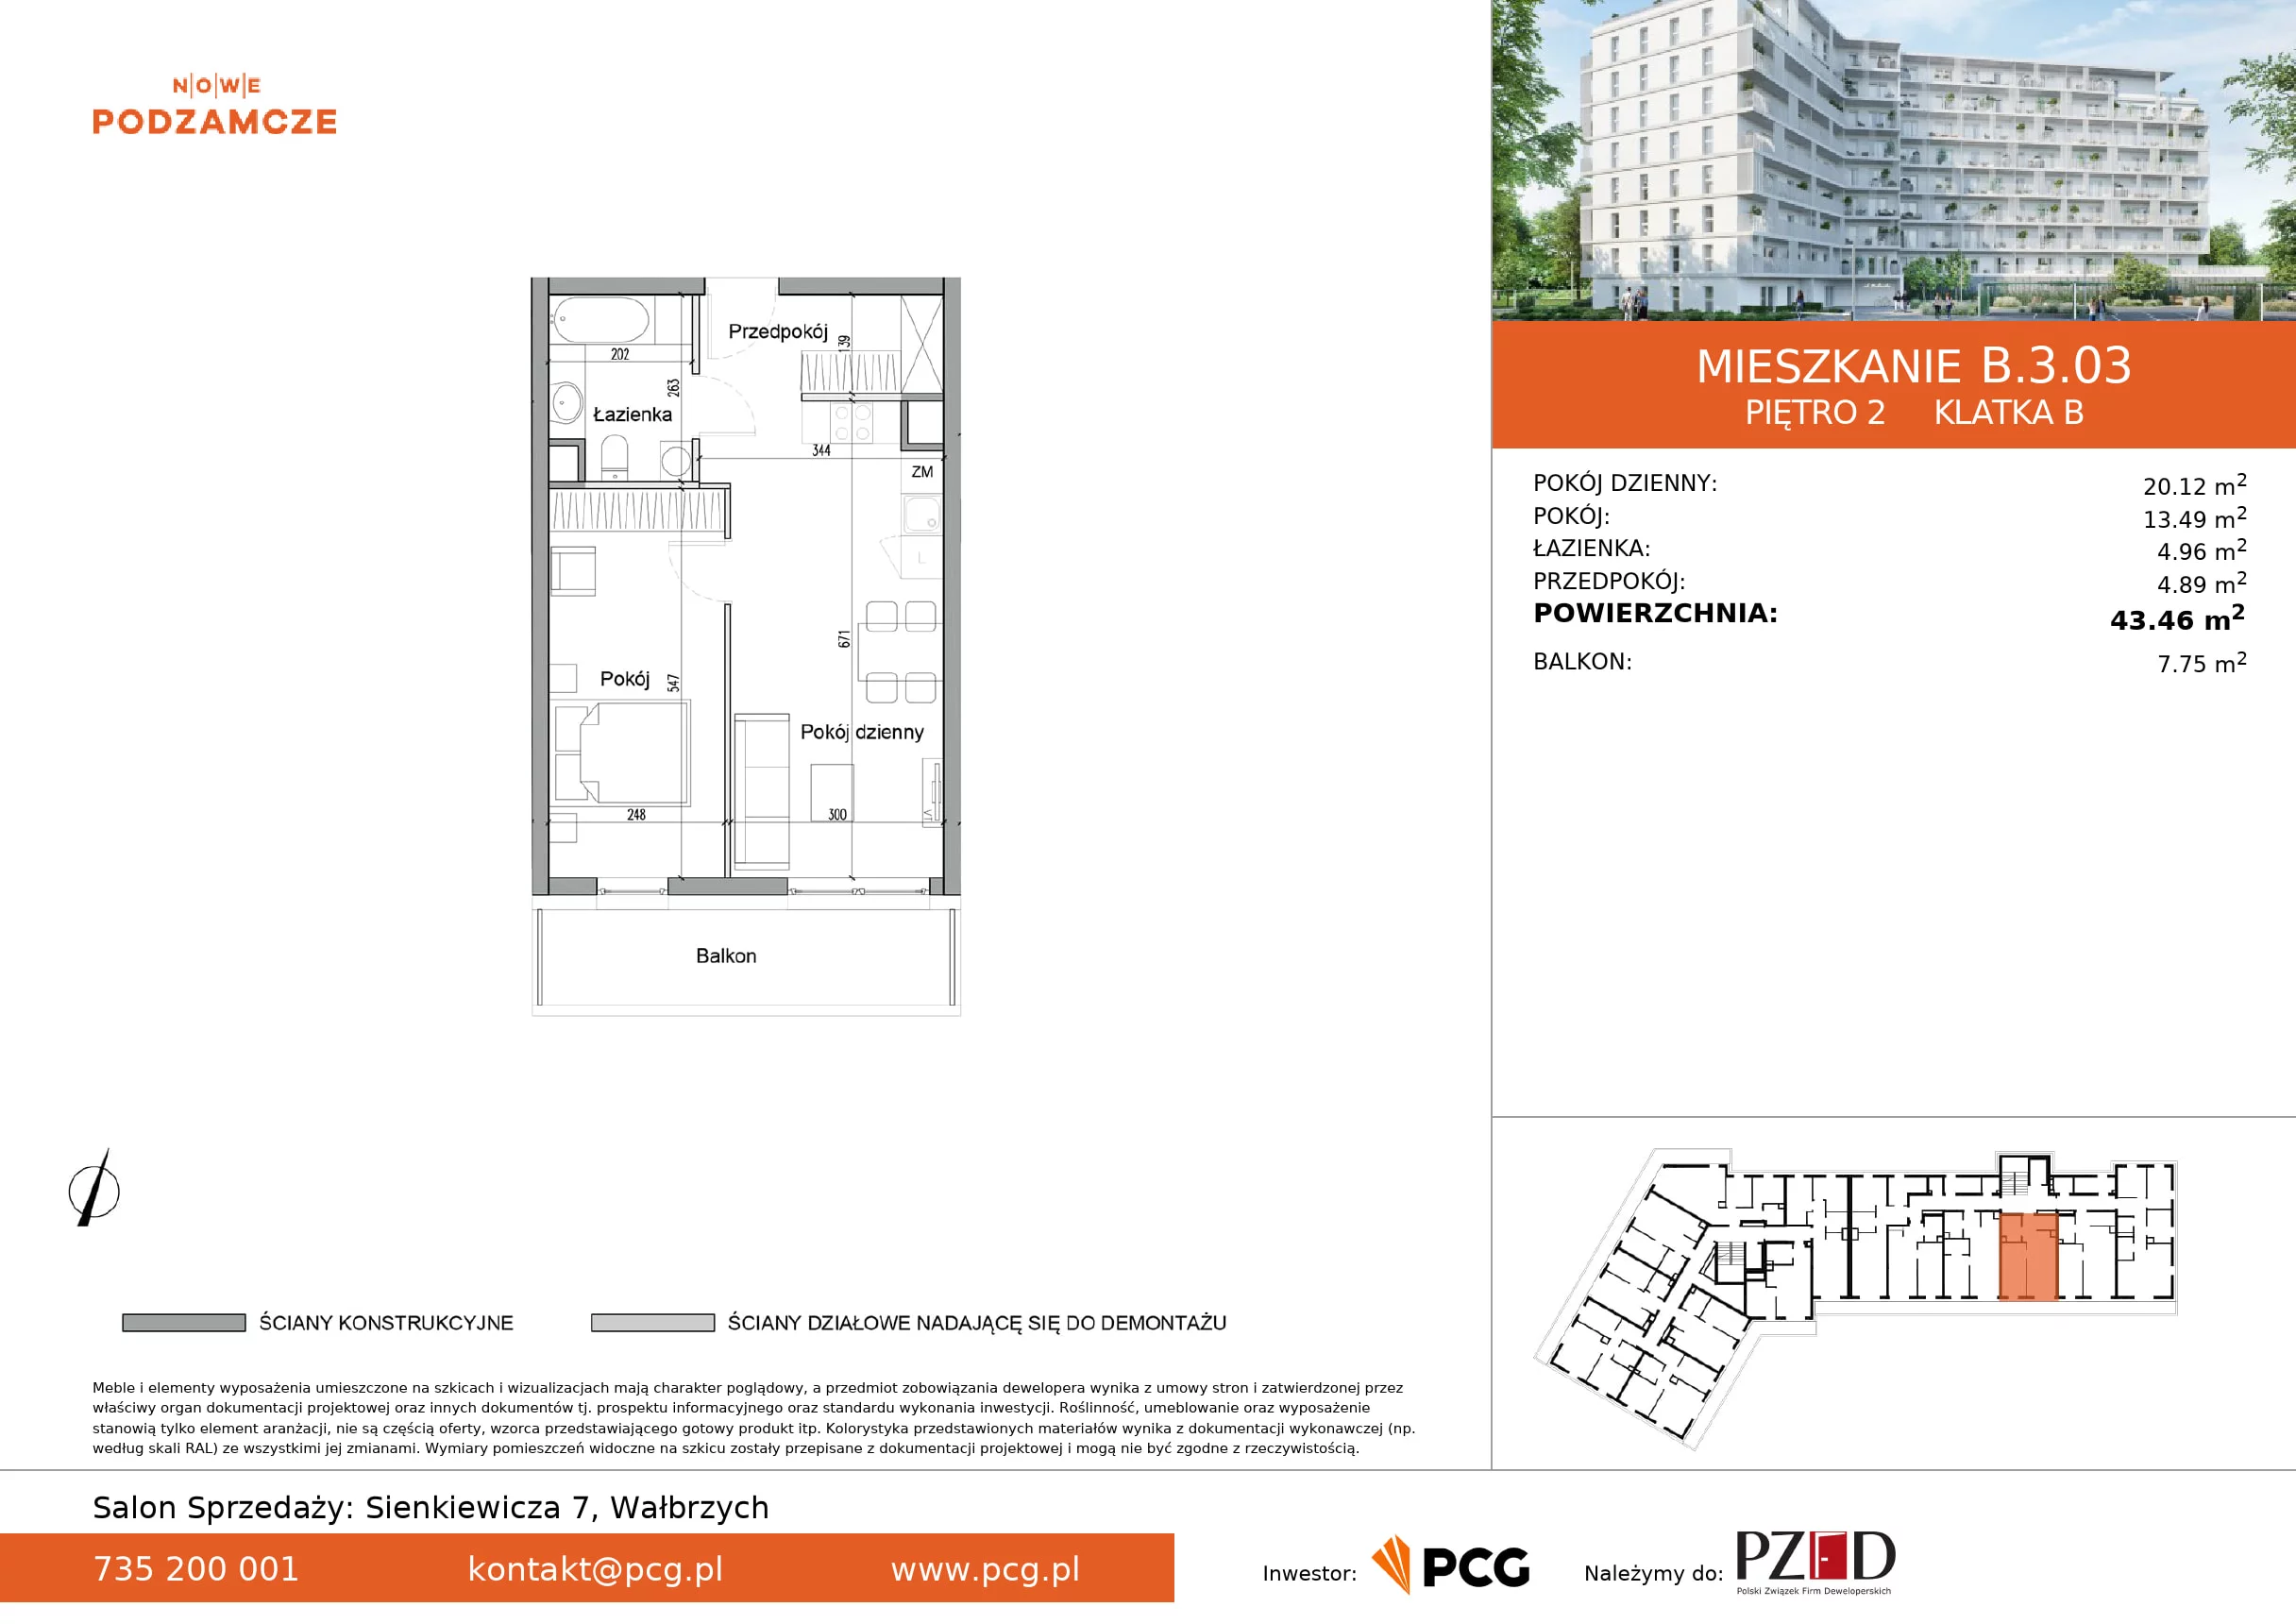 Mieszkanie 43,46 m², piętro 2, oferta nr B.3.03, Nowe Podzamcze, Wałbrzych, al. Podwale 2, 4